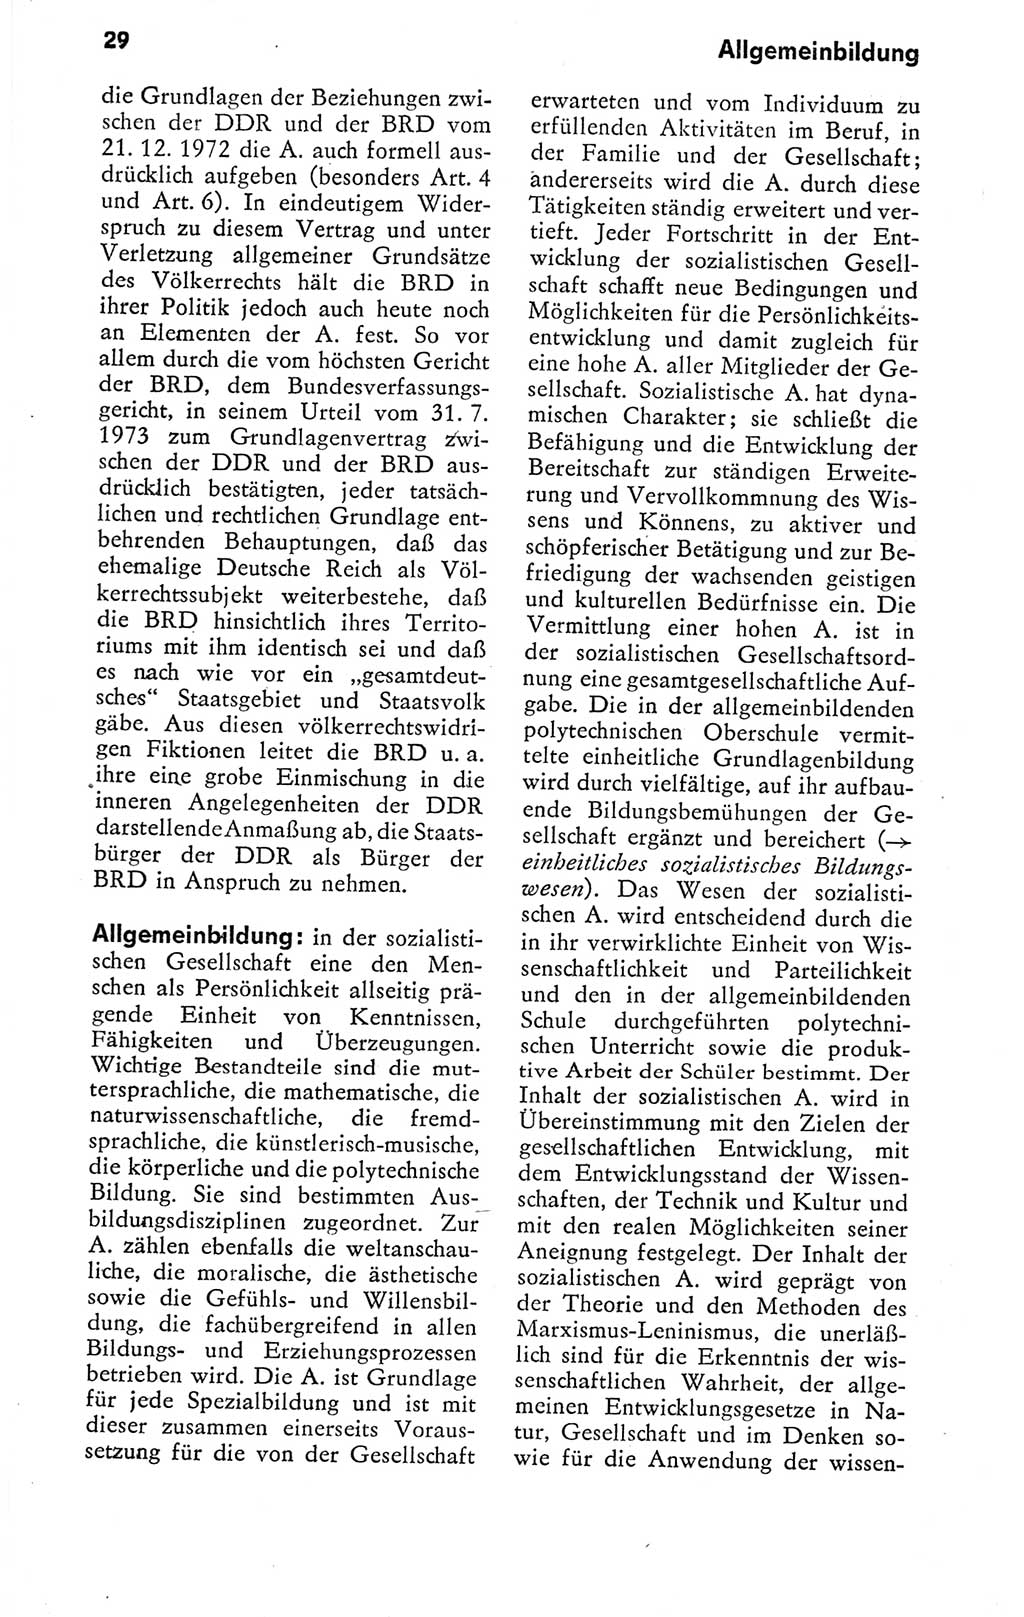 Kleines politisches Wörterbuch [Deutsche Demokratische Republik (DDR)] 1978, Seite 29 (Kl. pol. Wb. DDR 1978, S. 29)